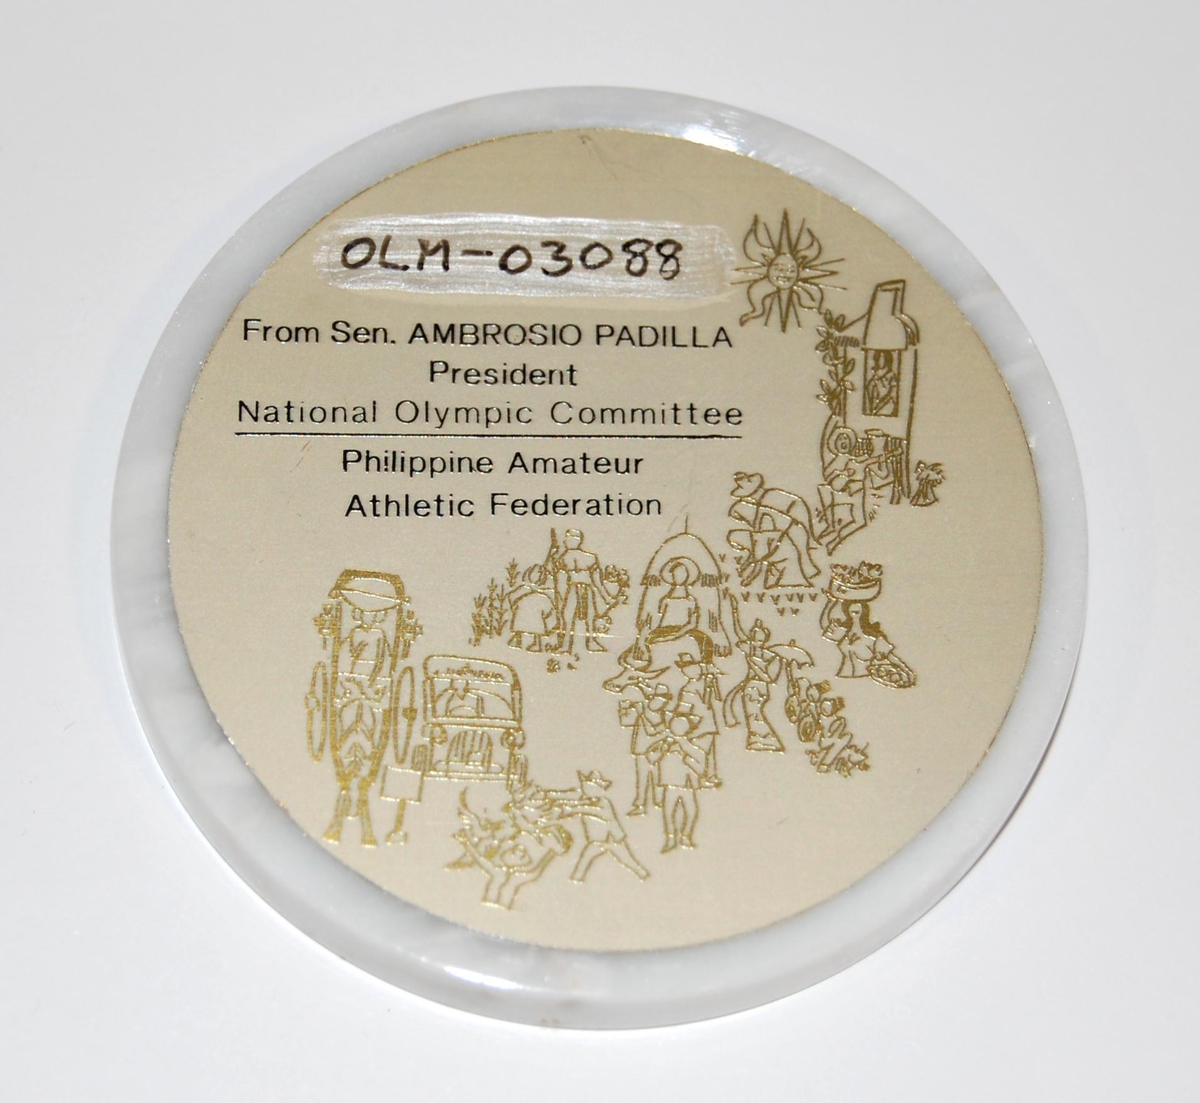 Hvit-, sort- og sølvfarget medalje av en type stenyøy- På medaljen er det logo for PAAF (Philippine Athletic Federation). I logoen inngår det en fakkel.